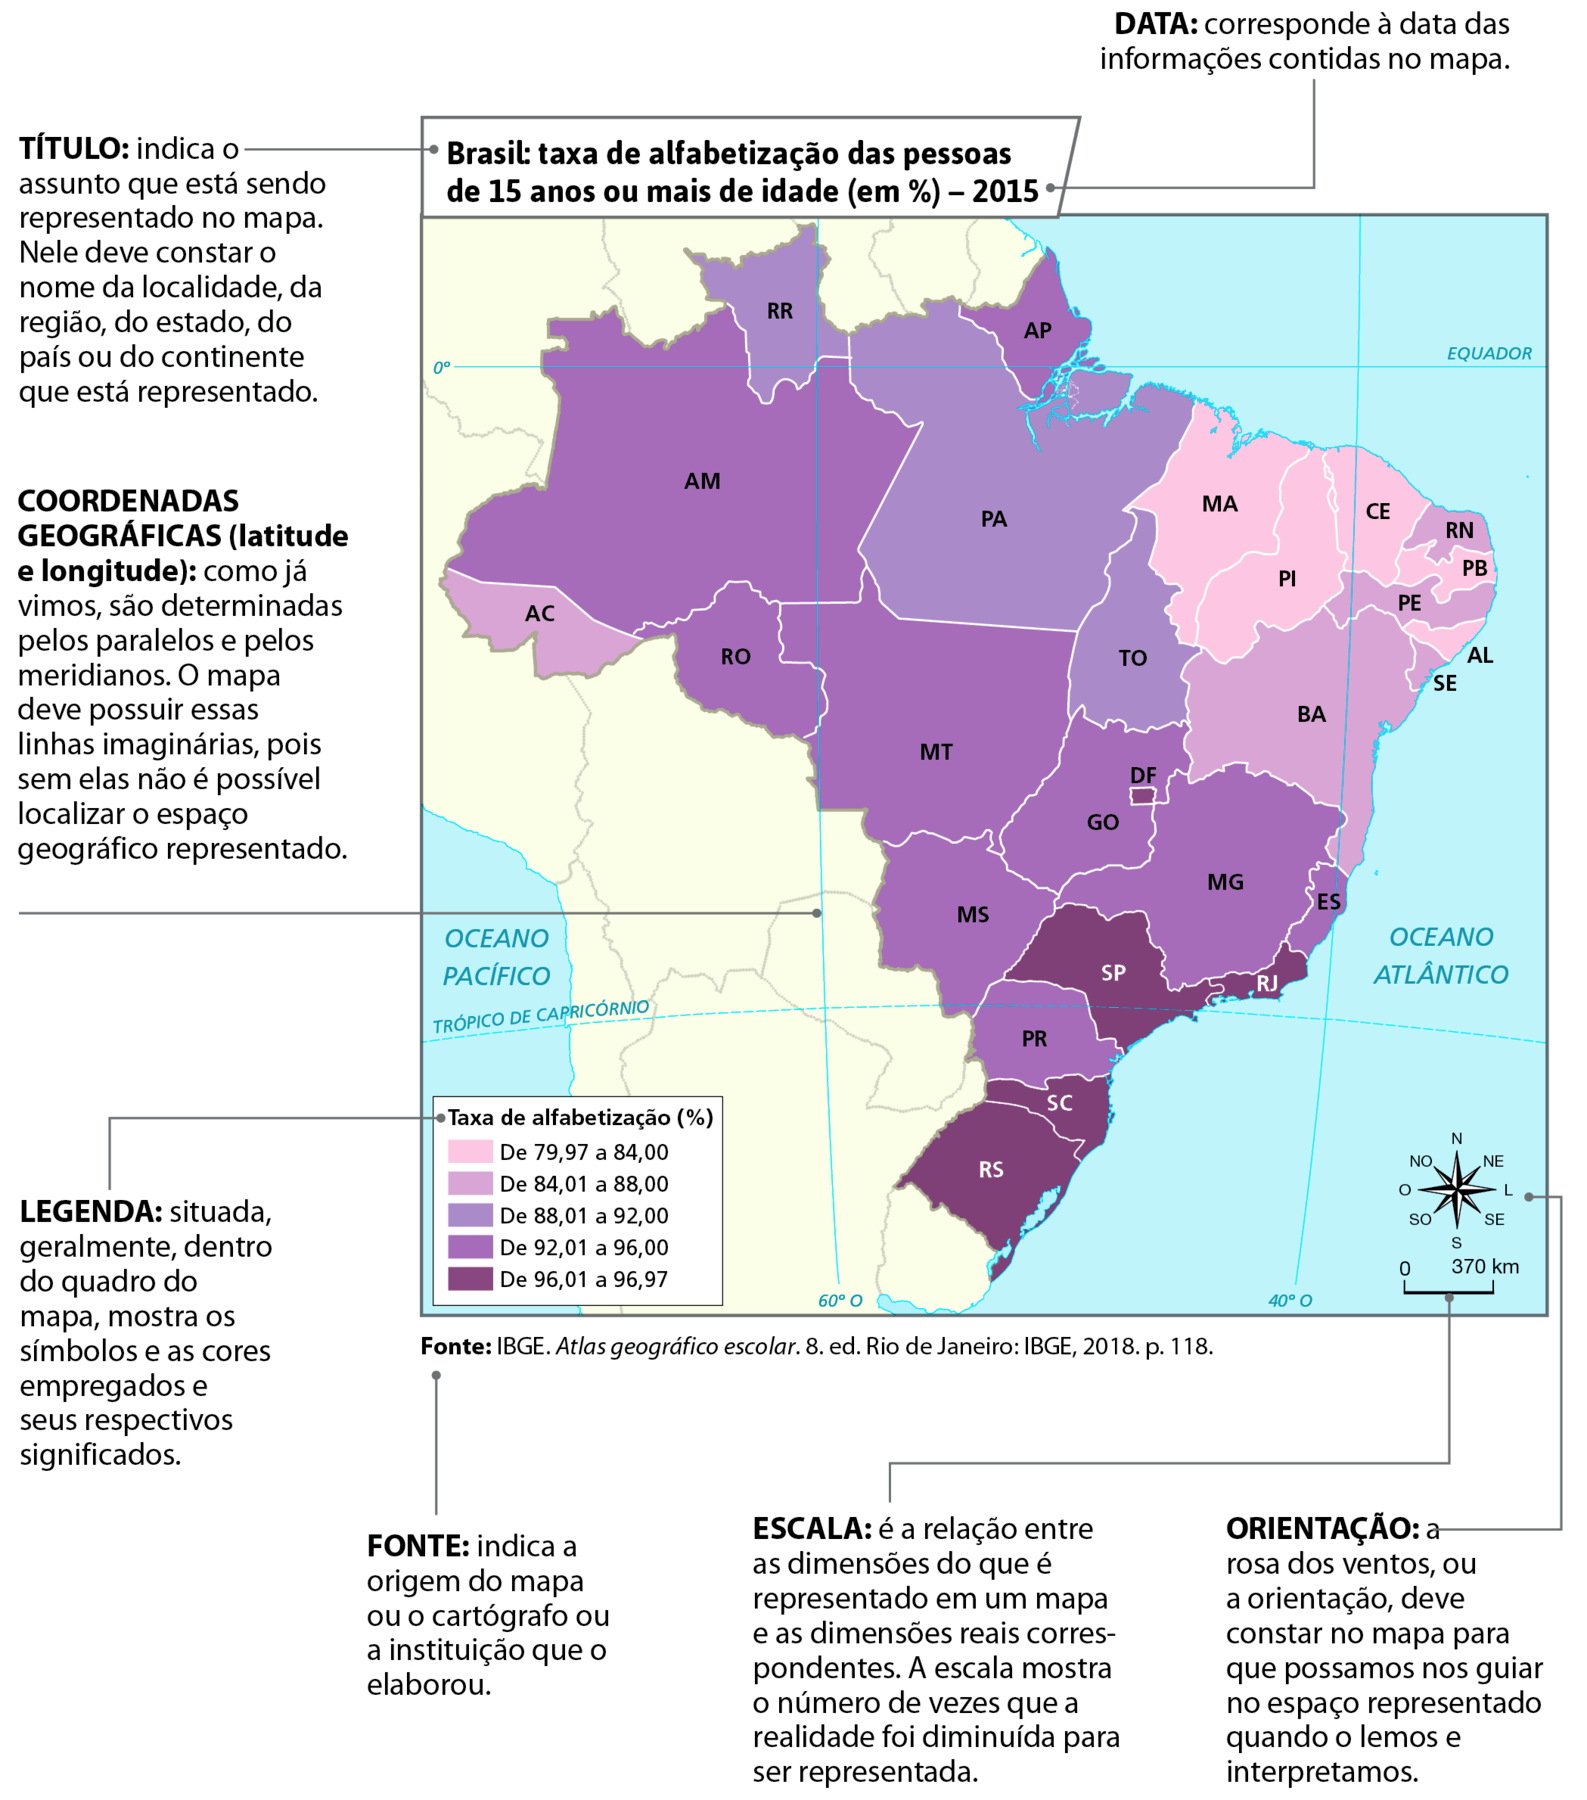 Mapa. Brasil: taxa de alfabetização das pessoas de 15 anos ou mais de idade (em porcentagem), em 2015. Mapa das unidades federativas destacadas em tonalidades de cor que variam do mais fraco (rosa) para o mais forte (roxo) de acordo com as faixas percentuais de taxa de alfabetização indicadas na legenda do mapa.  
Faixa de 79,97 a 84 por cento: Maranhão, Piauí, Ceará, Paraíba, Alagoas. 
Faixa de 84,01 a 88 por cento: Bahia, Sergipe, Pernambuco, Rio Grande do Norte, Acre. 
Faixa de 88,01 a 92 por cento: Roraima, Pará, Tocantins. 
Faixa de 92,01 a 96 por cento: Amapá, Amazonas, Rondônia, Mato Grosso, Mato Grosso do Sul, Goiás, Minas Gerais, Espírito Santo, Paraná. 
Faixa de 96,01 a 96,97 por cento: Distrito Federal, São Paulo, Rio de Janeiro, Santa Catarina, Rio Grande do Sul. 
Estão traçados o Trópico de Câncer, a linha do Equador, os meridianos 60 graus oeste e 40 graus oeste.
Abaixo, rosa dos ventos e escala de 0 a 370 quilômetros.